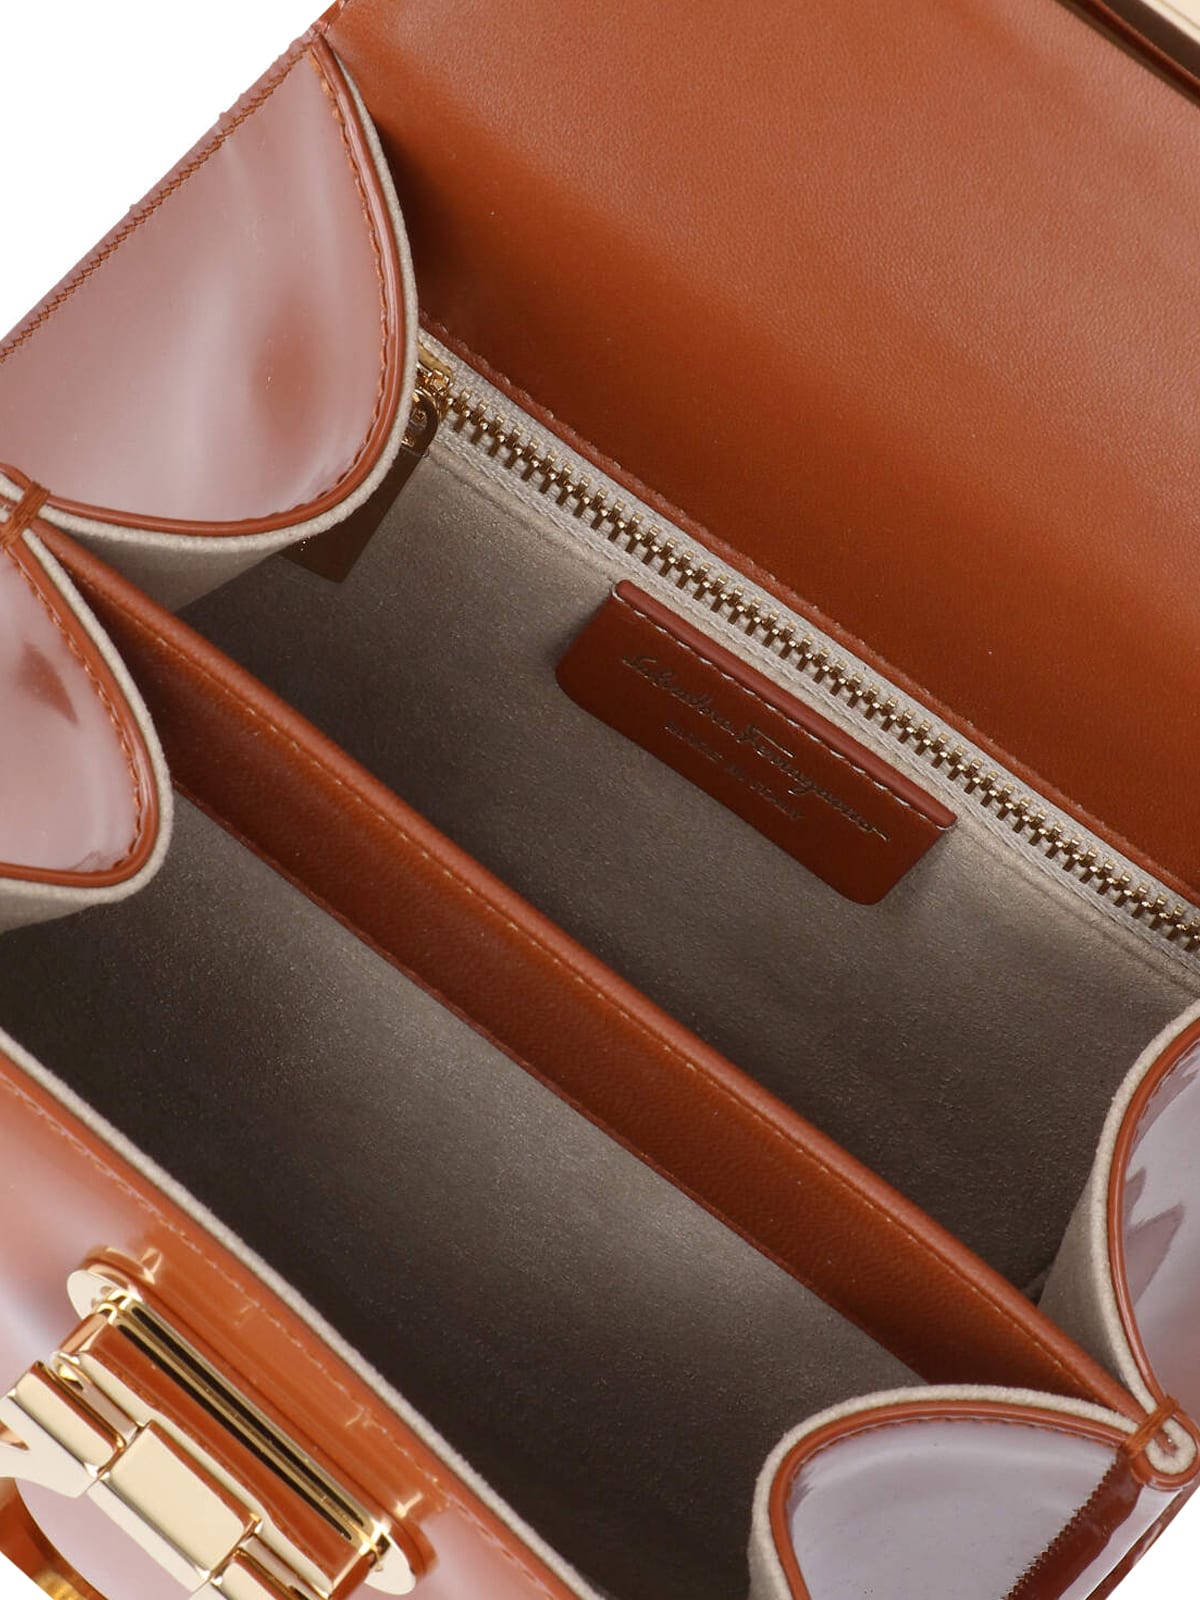 Shop Ferragamo Iconic S Handbag In Brown